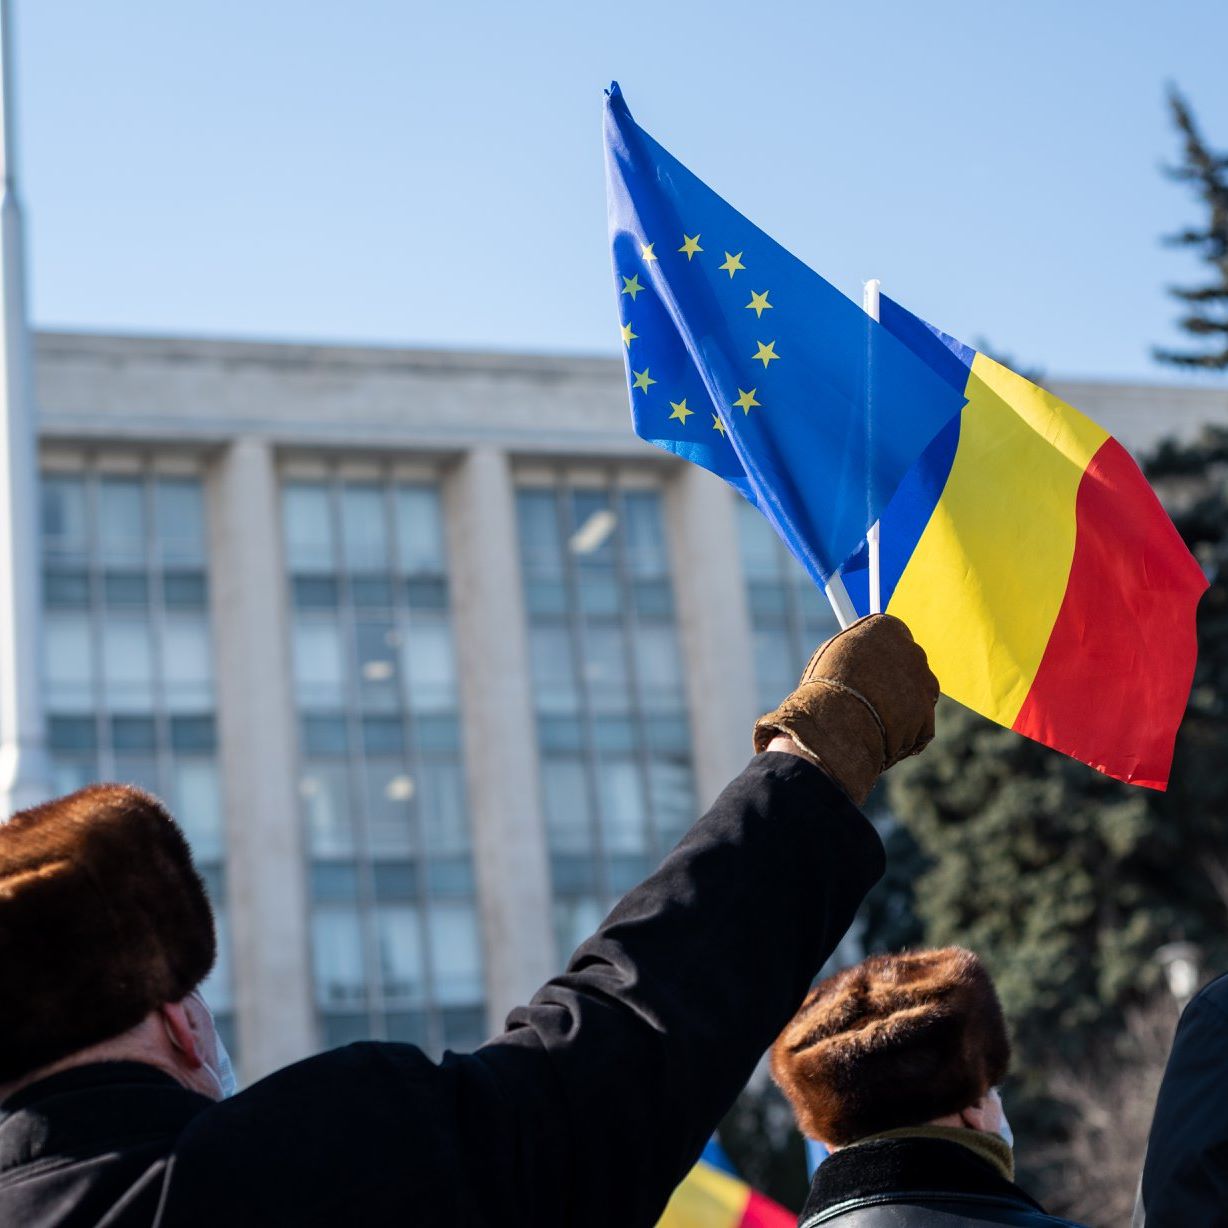 Dacă media sumei cu care un cetățean european contribuie la buget este de 240 de euro pe an, românii au o contribuție de patru ori mai mică